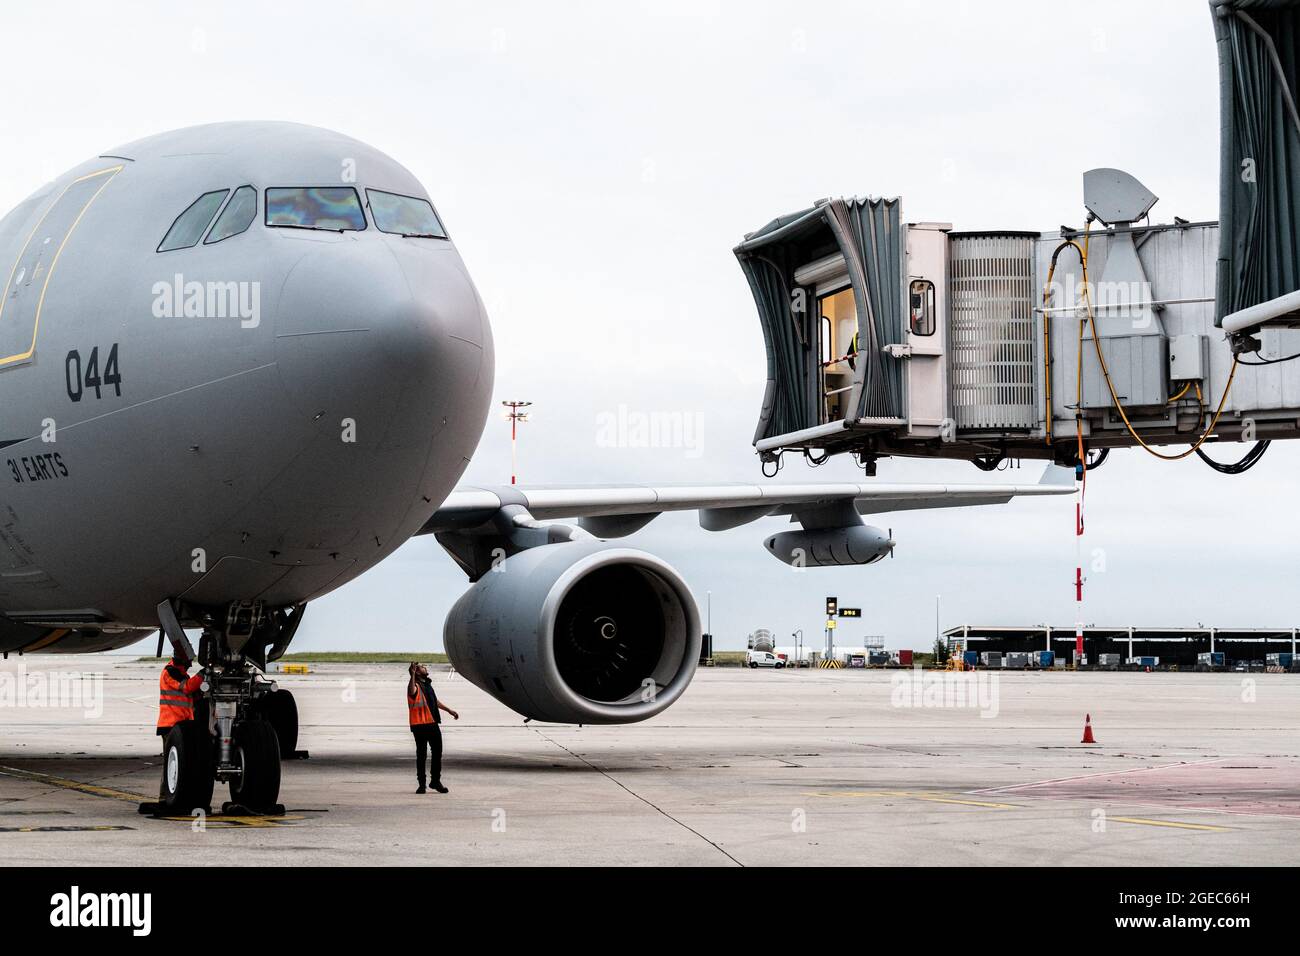 L'Airbus A330 de l'Airforce française arrive à l'aéroport Roissy Charles de Gaulle, au nord de Paris, en France, le 18 août 2021, dans le cadre de l'opération 'Apagan'. L'opération militaire baptisée « Apagan » a été lancée pour évacuer les ressortissants français et les collègues afghans d'Afghanistan, après une fin incroyablement rapide de la guerre de 20 ans en Afghanistan, alors que des milliers de personnes ont pris l'aéroport de la ville pour tenter de fuir la marque terrifiée de régime islamiste du groupe. Photo de Daniel Derajinski/ABACAPRESS.COM Banque D'Images